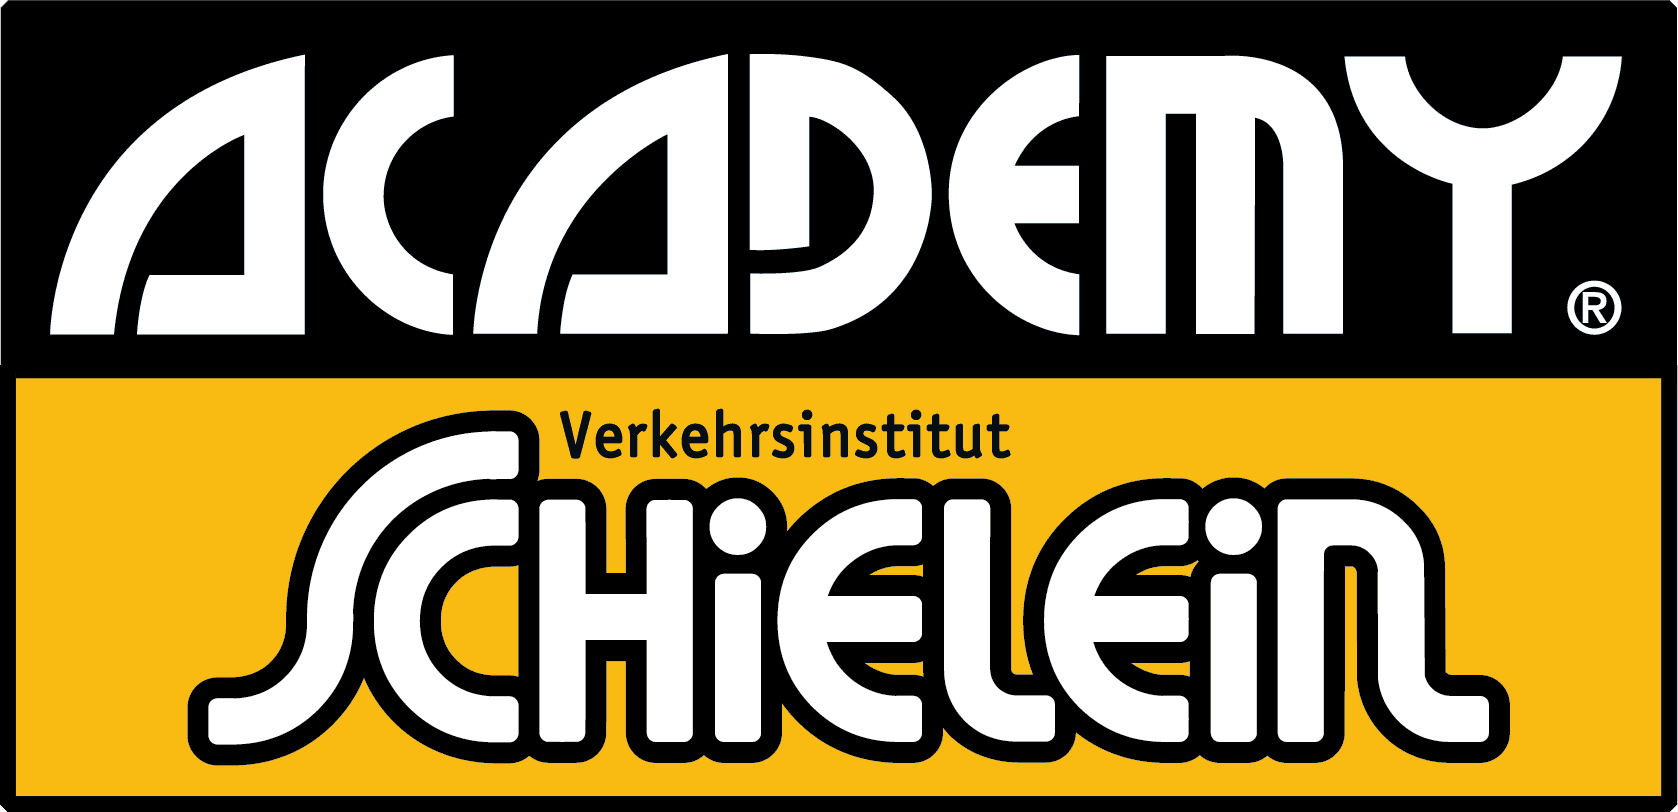 Academy Verkehrsinstitut Schielein